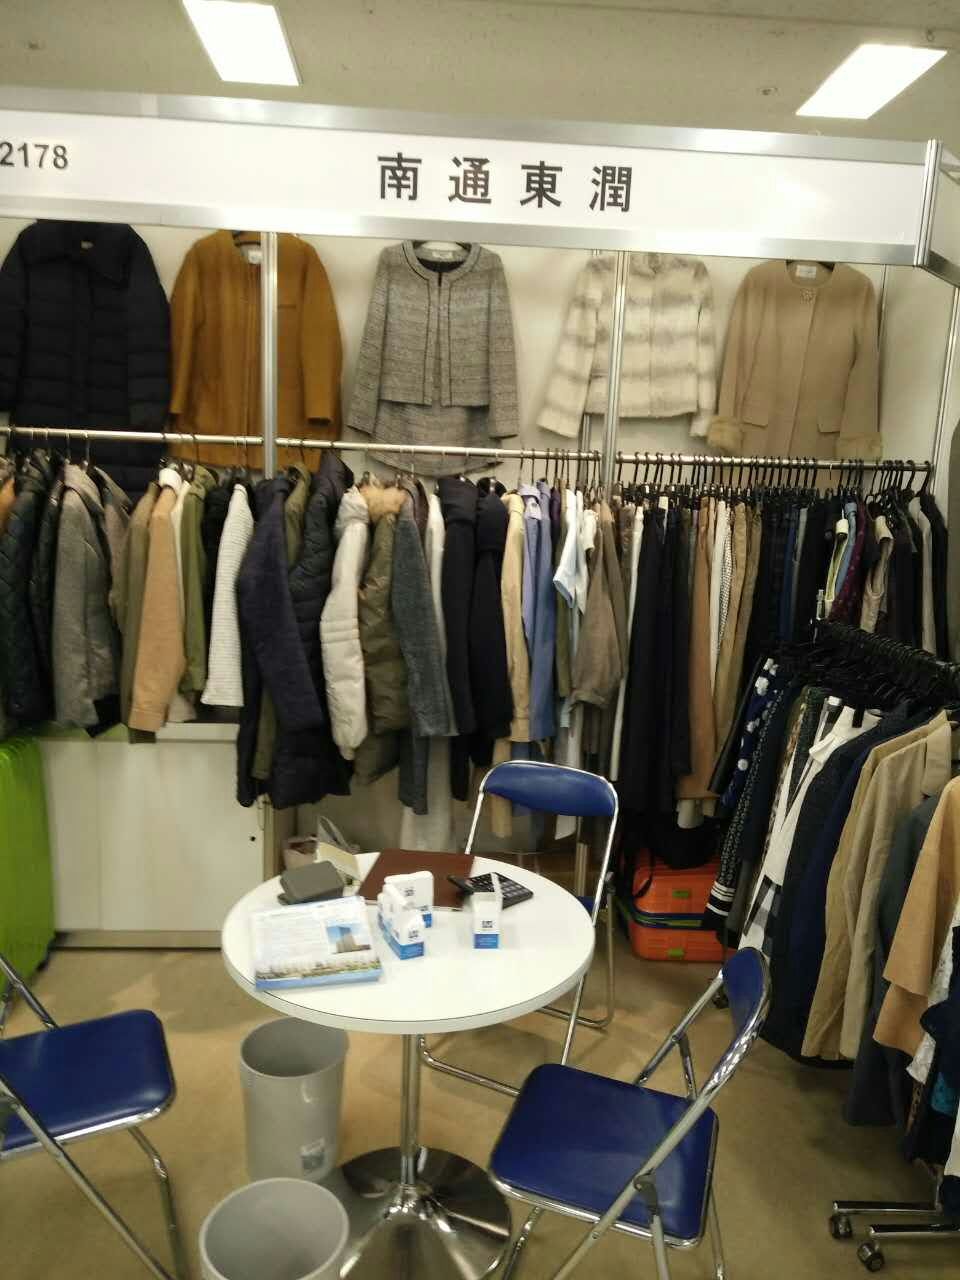 公司已經開始報名參加了16年10月份日本東京的成衣展了